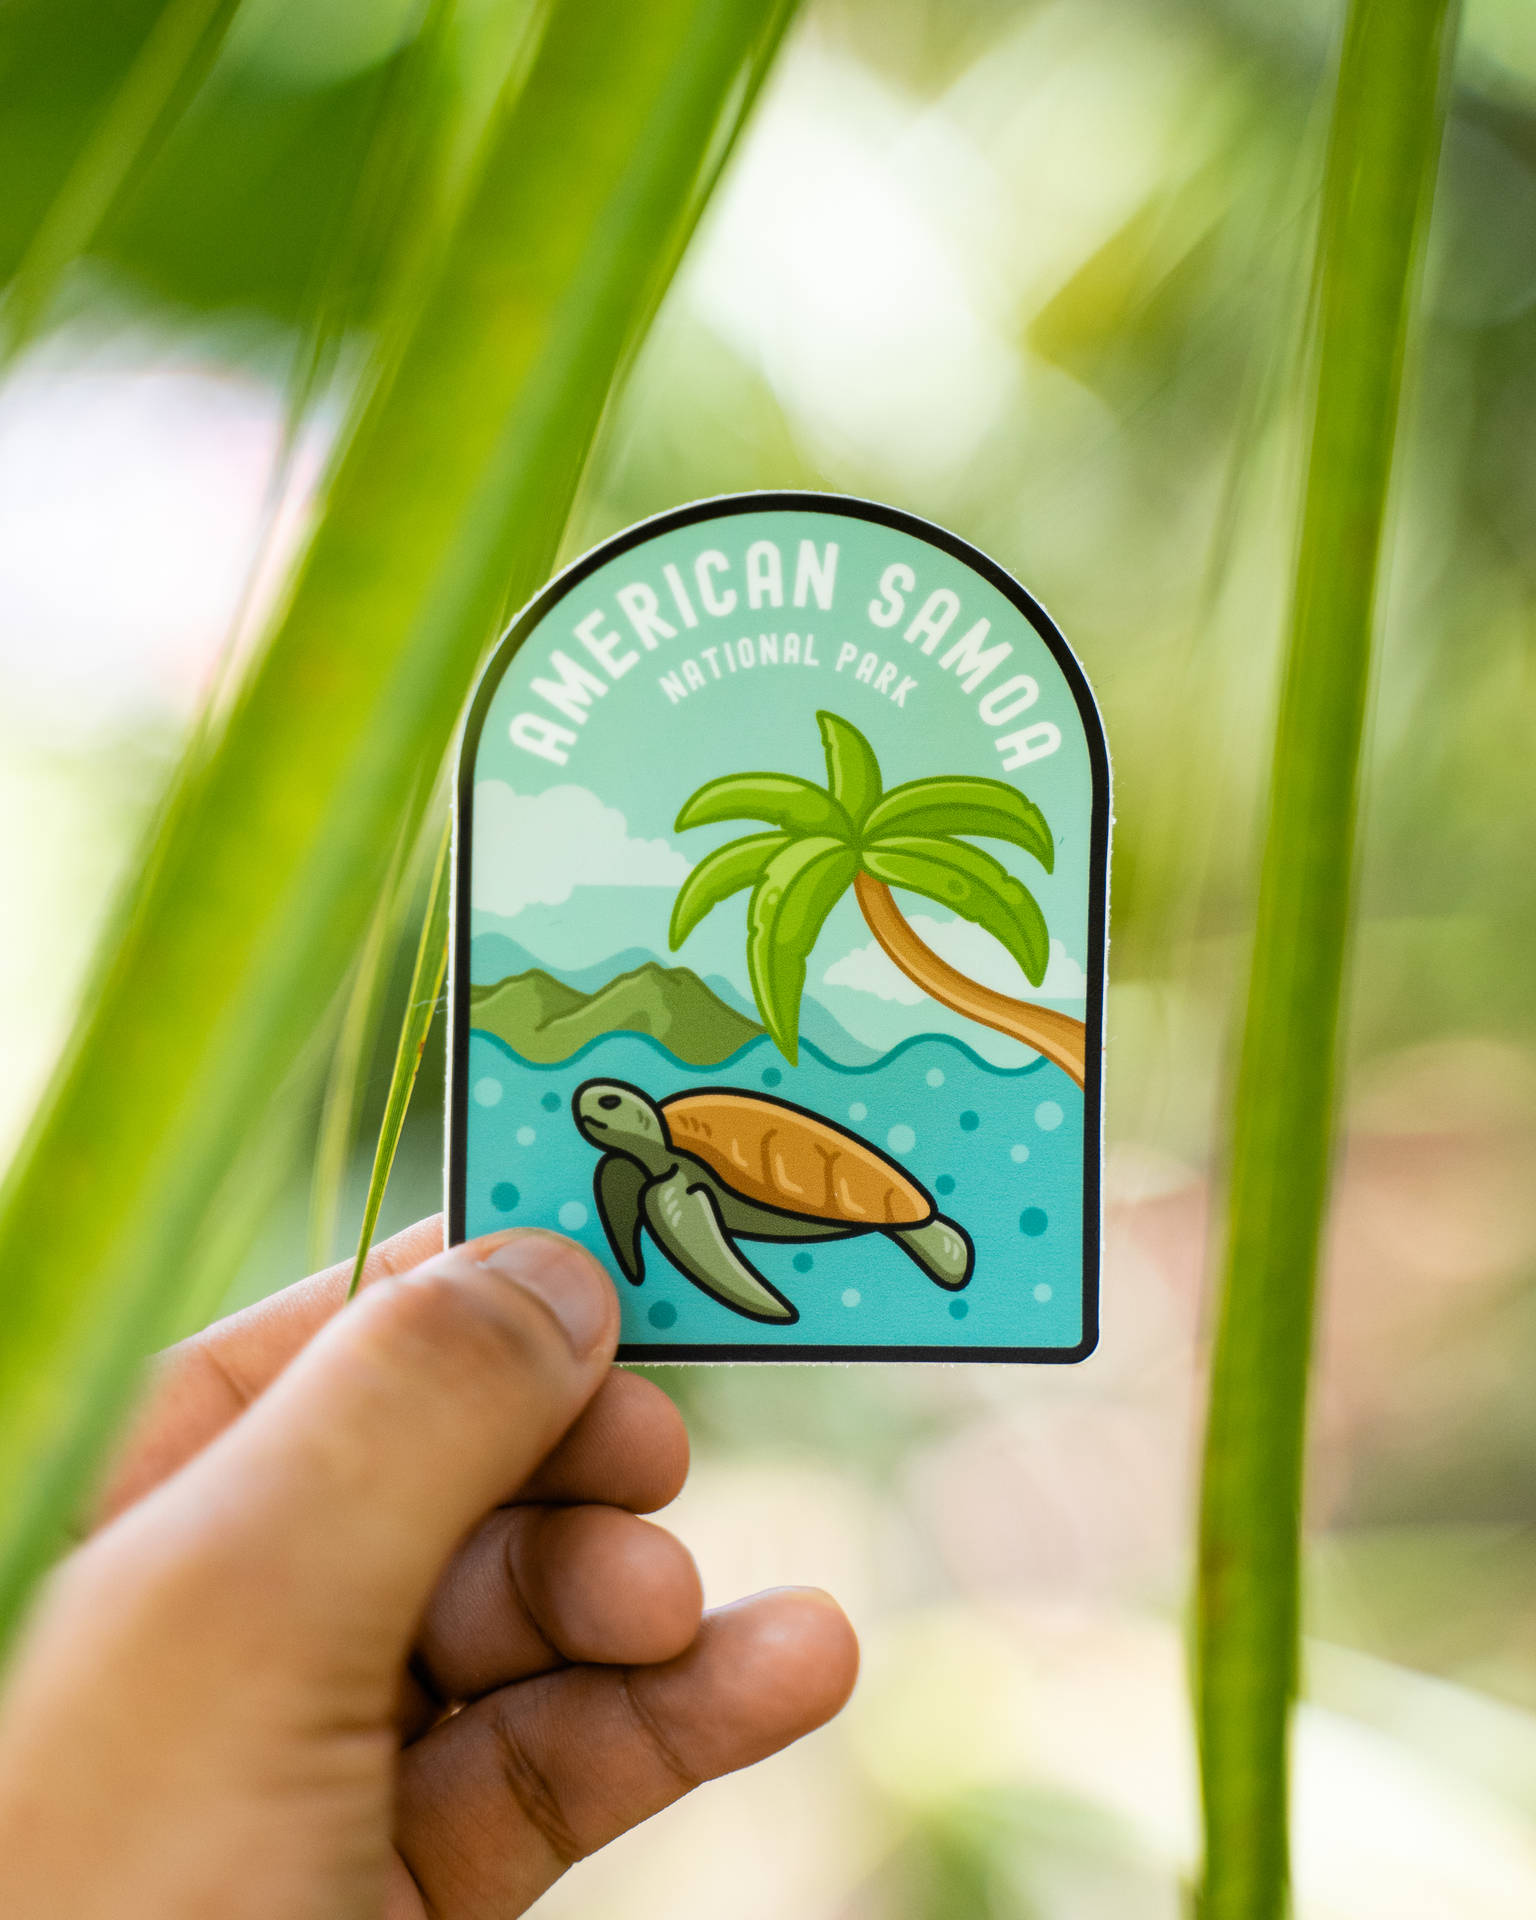 Samoa National Park Logo Background